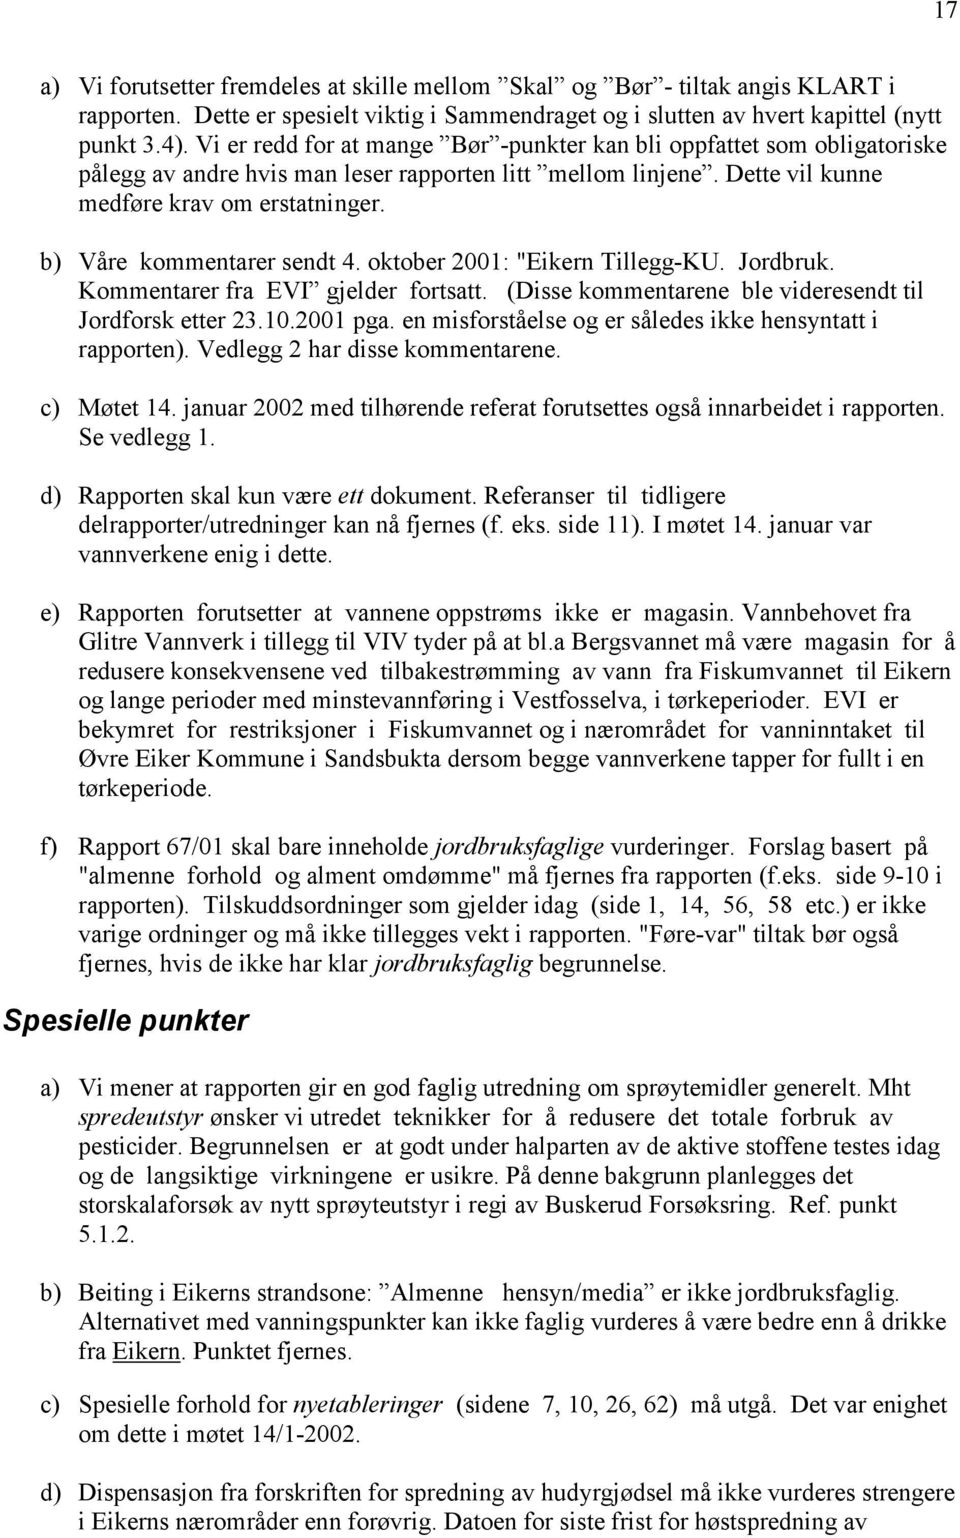 b) Våre kommentarer sendt 4. oktober 2001: "Eikern Tillegg-KU. Jordbruk. Kommentarer fra EVI gjelder fortsatt. (Disse kommentarene ble videresendt til Jordforsk etter 23.10.2001 pga.